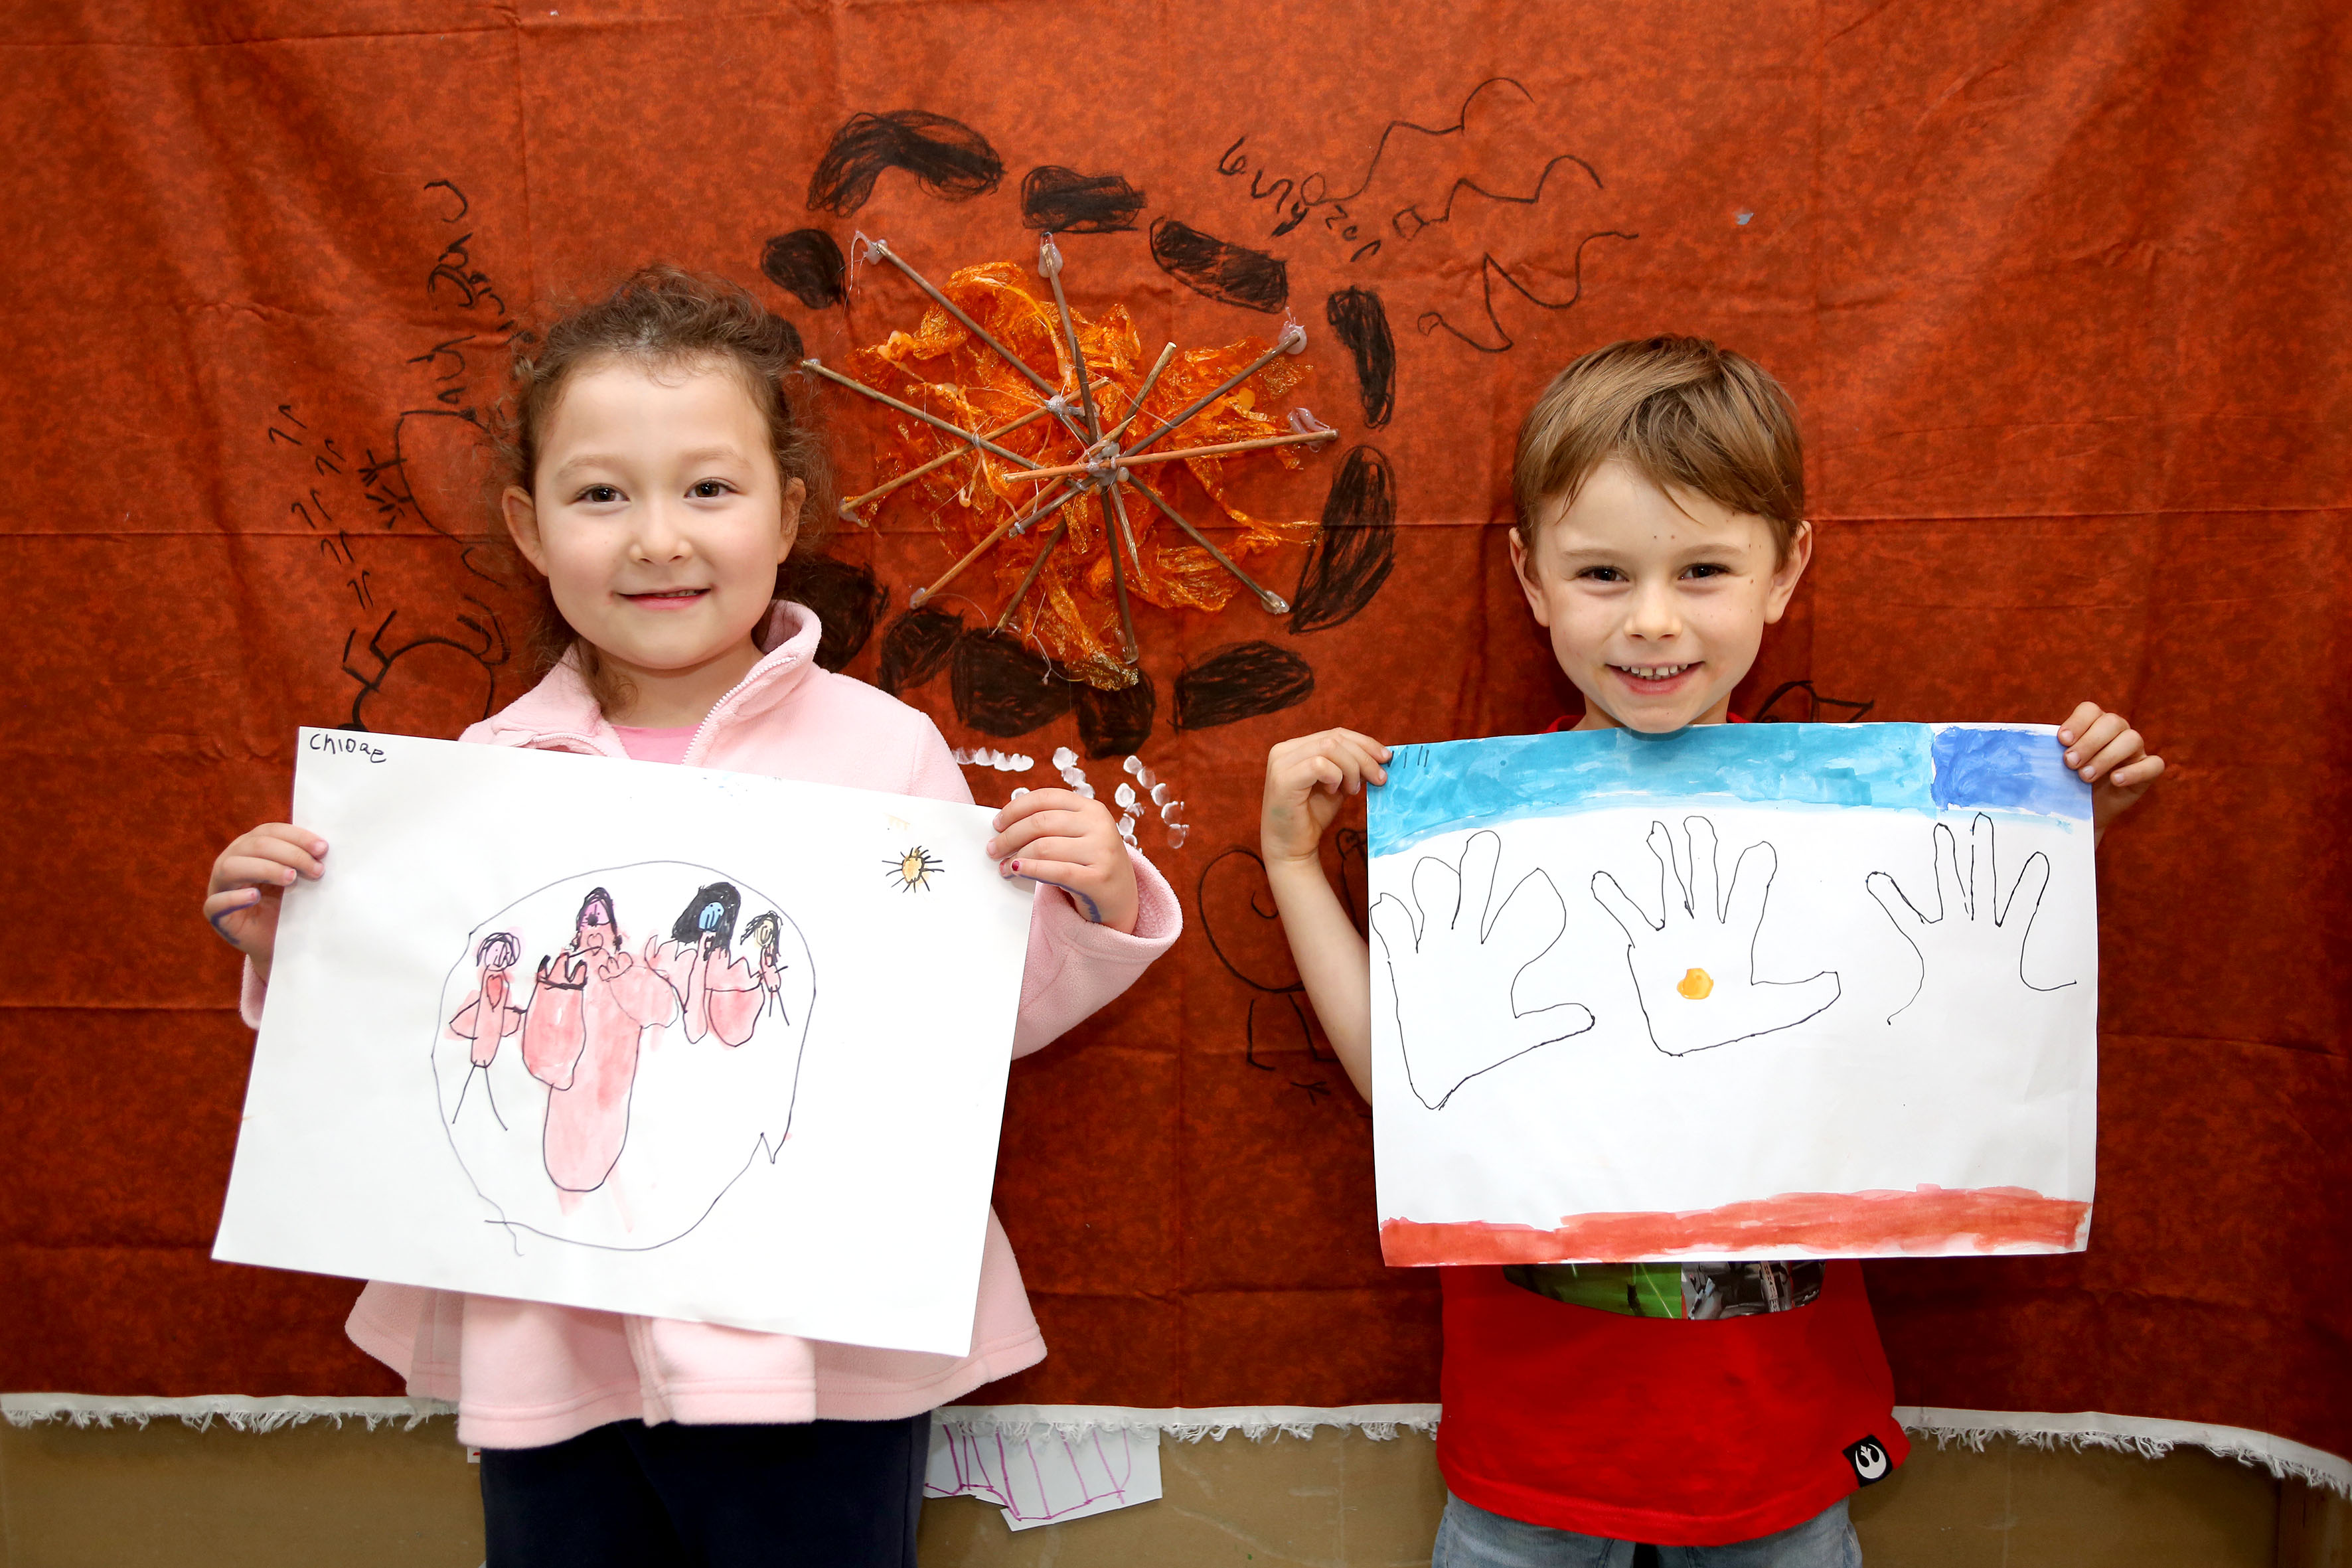 Children holding up artwork